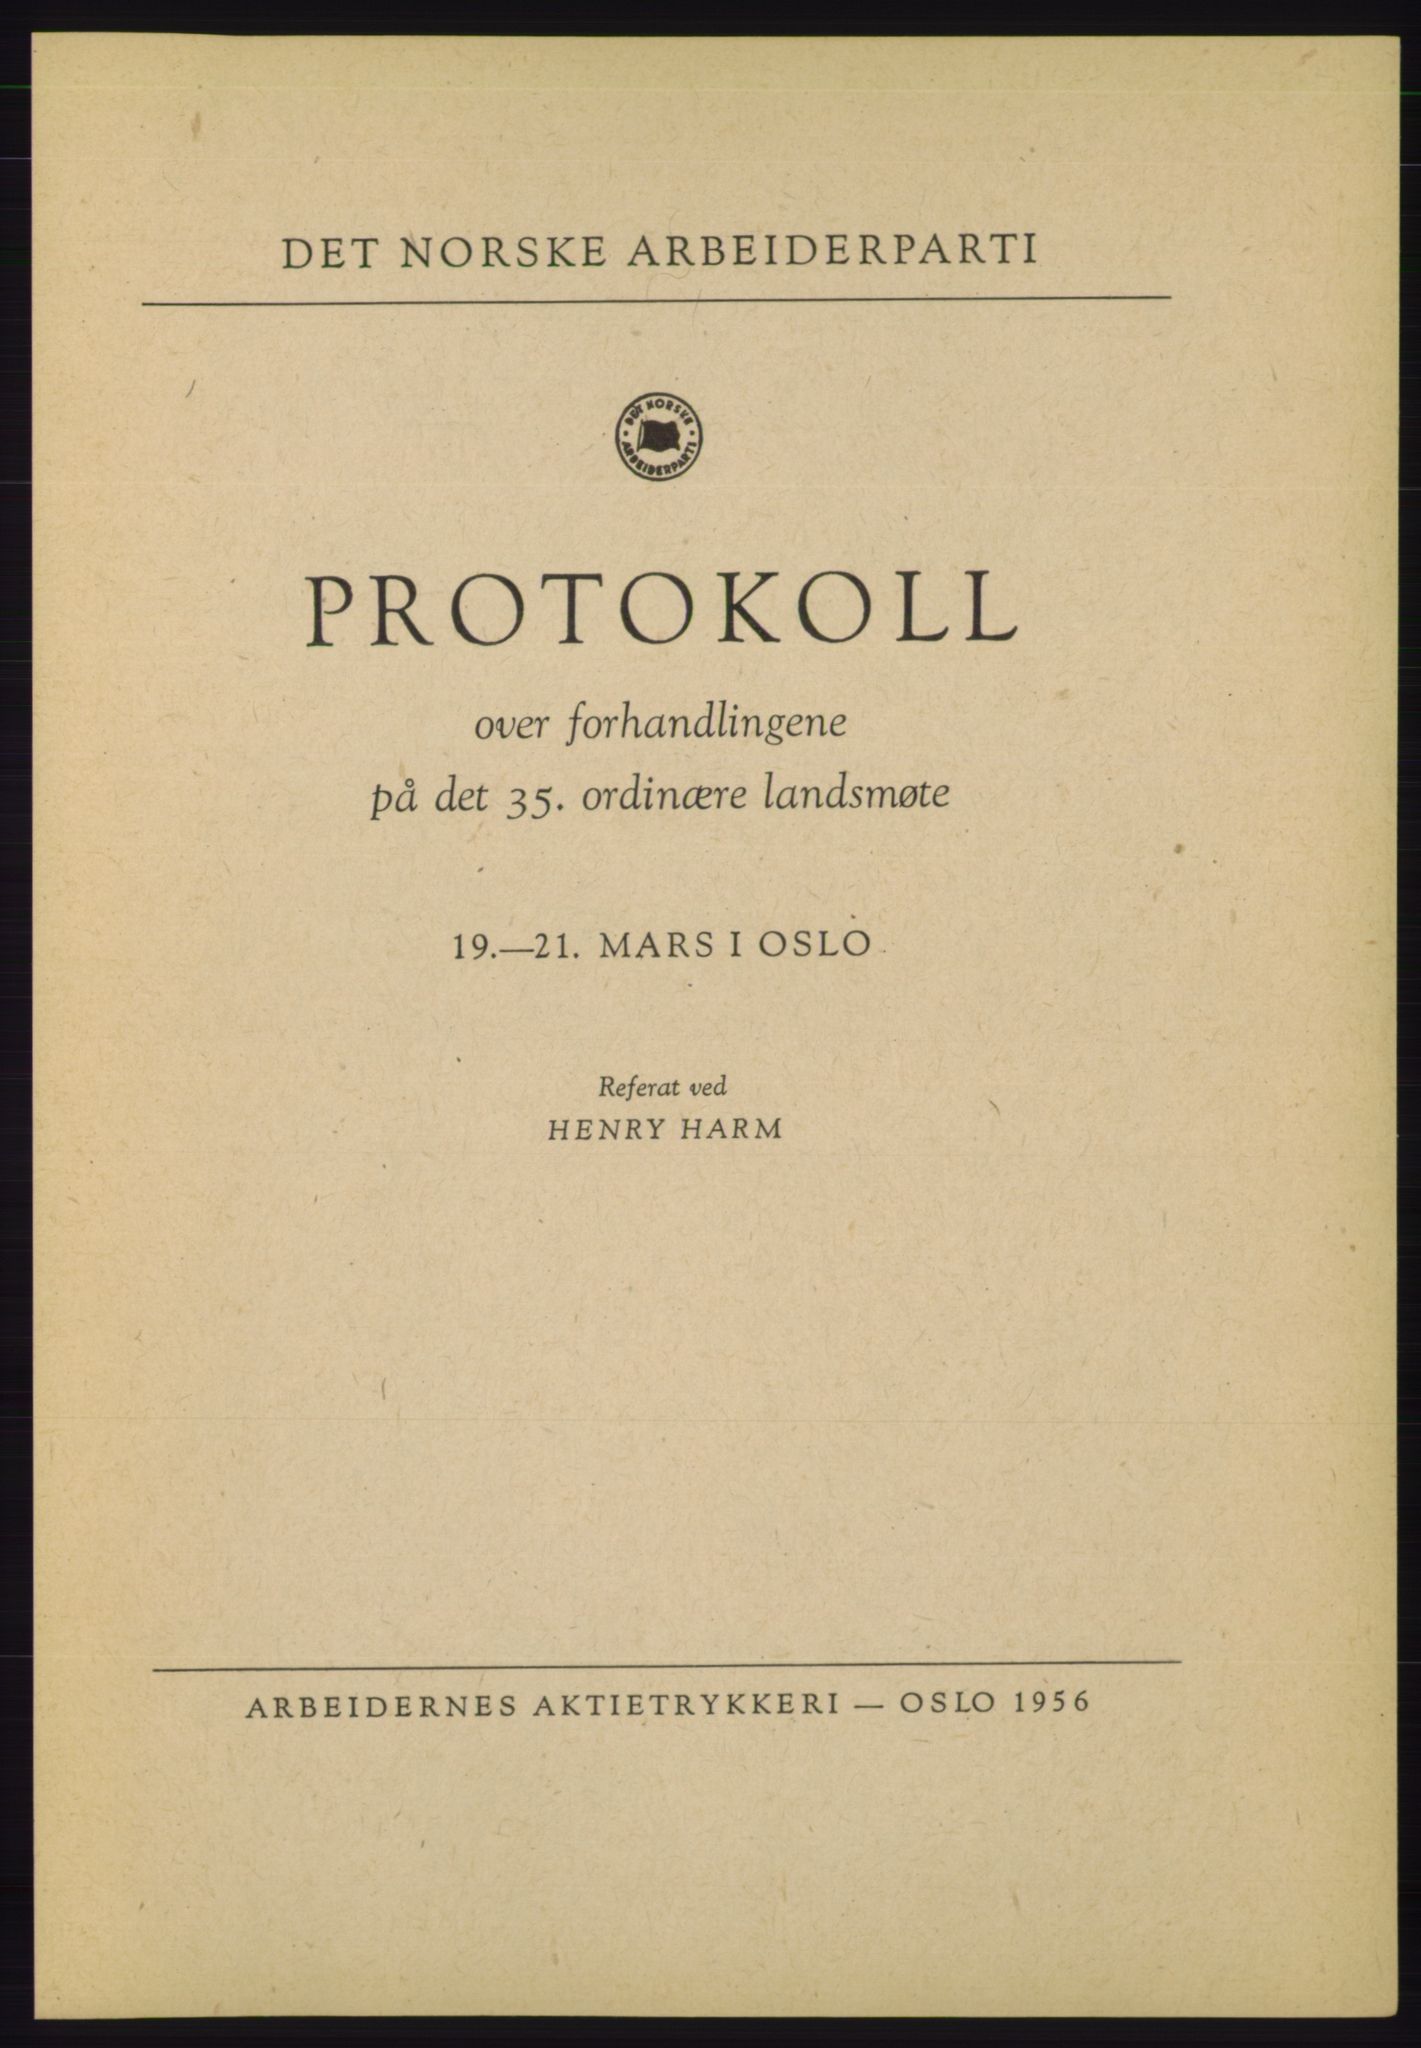 Det norske Arbeiderparti - publikasjoner, AAB/-/-/-: Protokoll over forhandlingene på det 35. ordinære landsmøte 19.-21. mars 1955 i Oslo, 1955